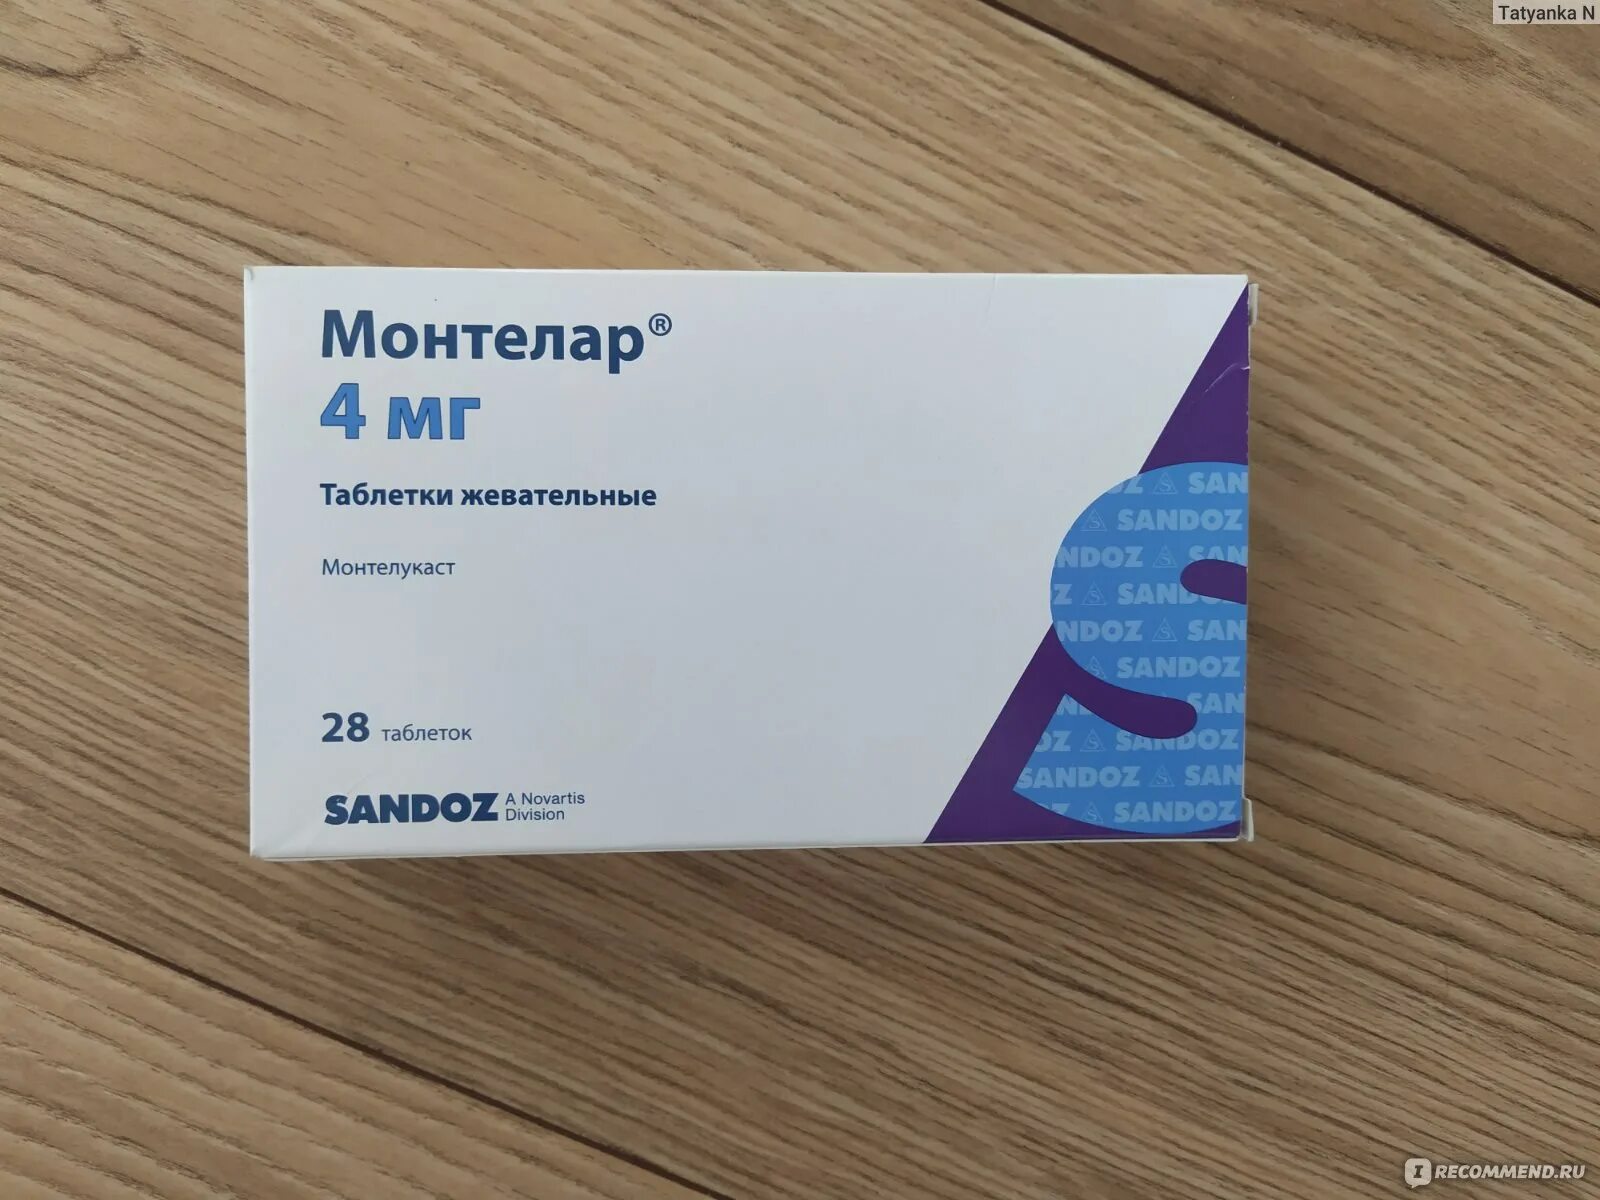 Монтелар таблетки аналоги. Монтелар Сандоз. Монтелар жевательные таблетки 4 мг. Монтелукаст монтелар. Сингуляр монтелар.